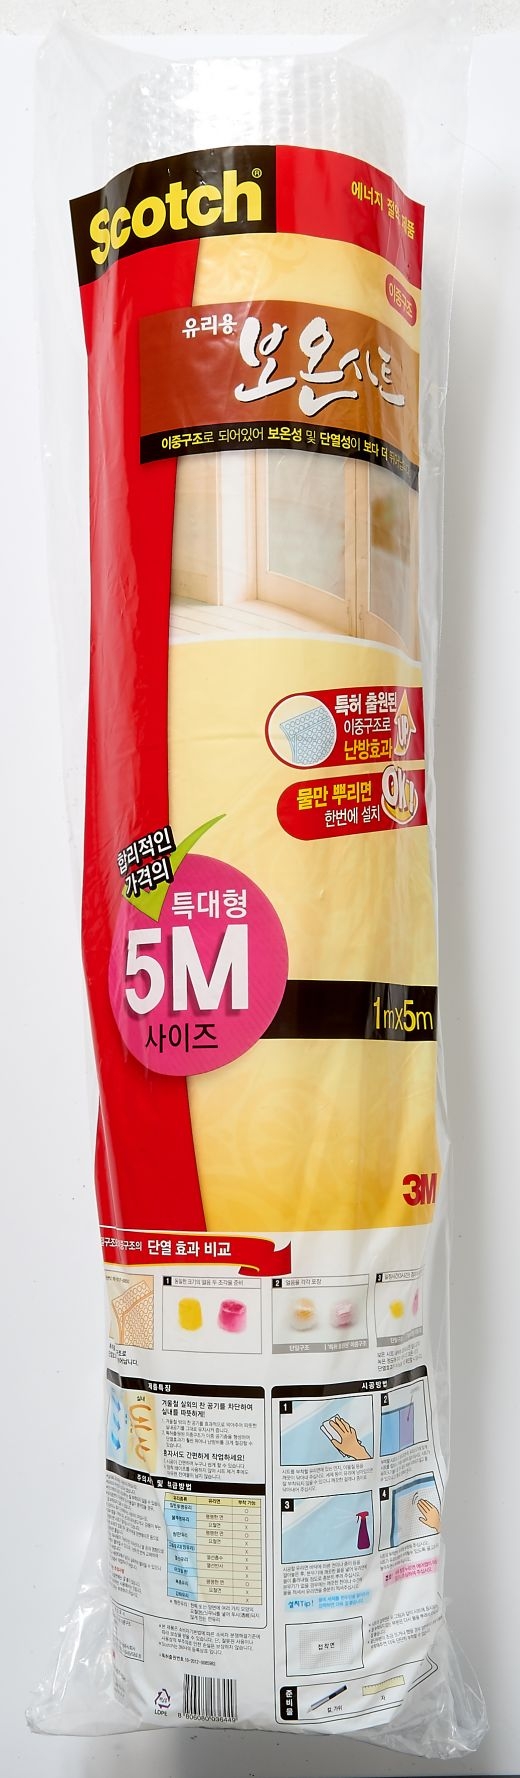 경제 불황에 '뽁뽁이·문풍지' 알뜰 난방용품 판매 불티